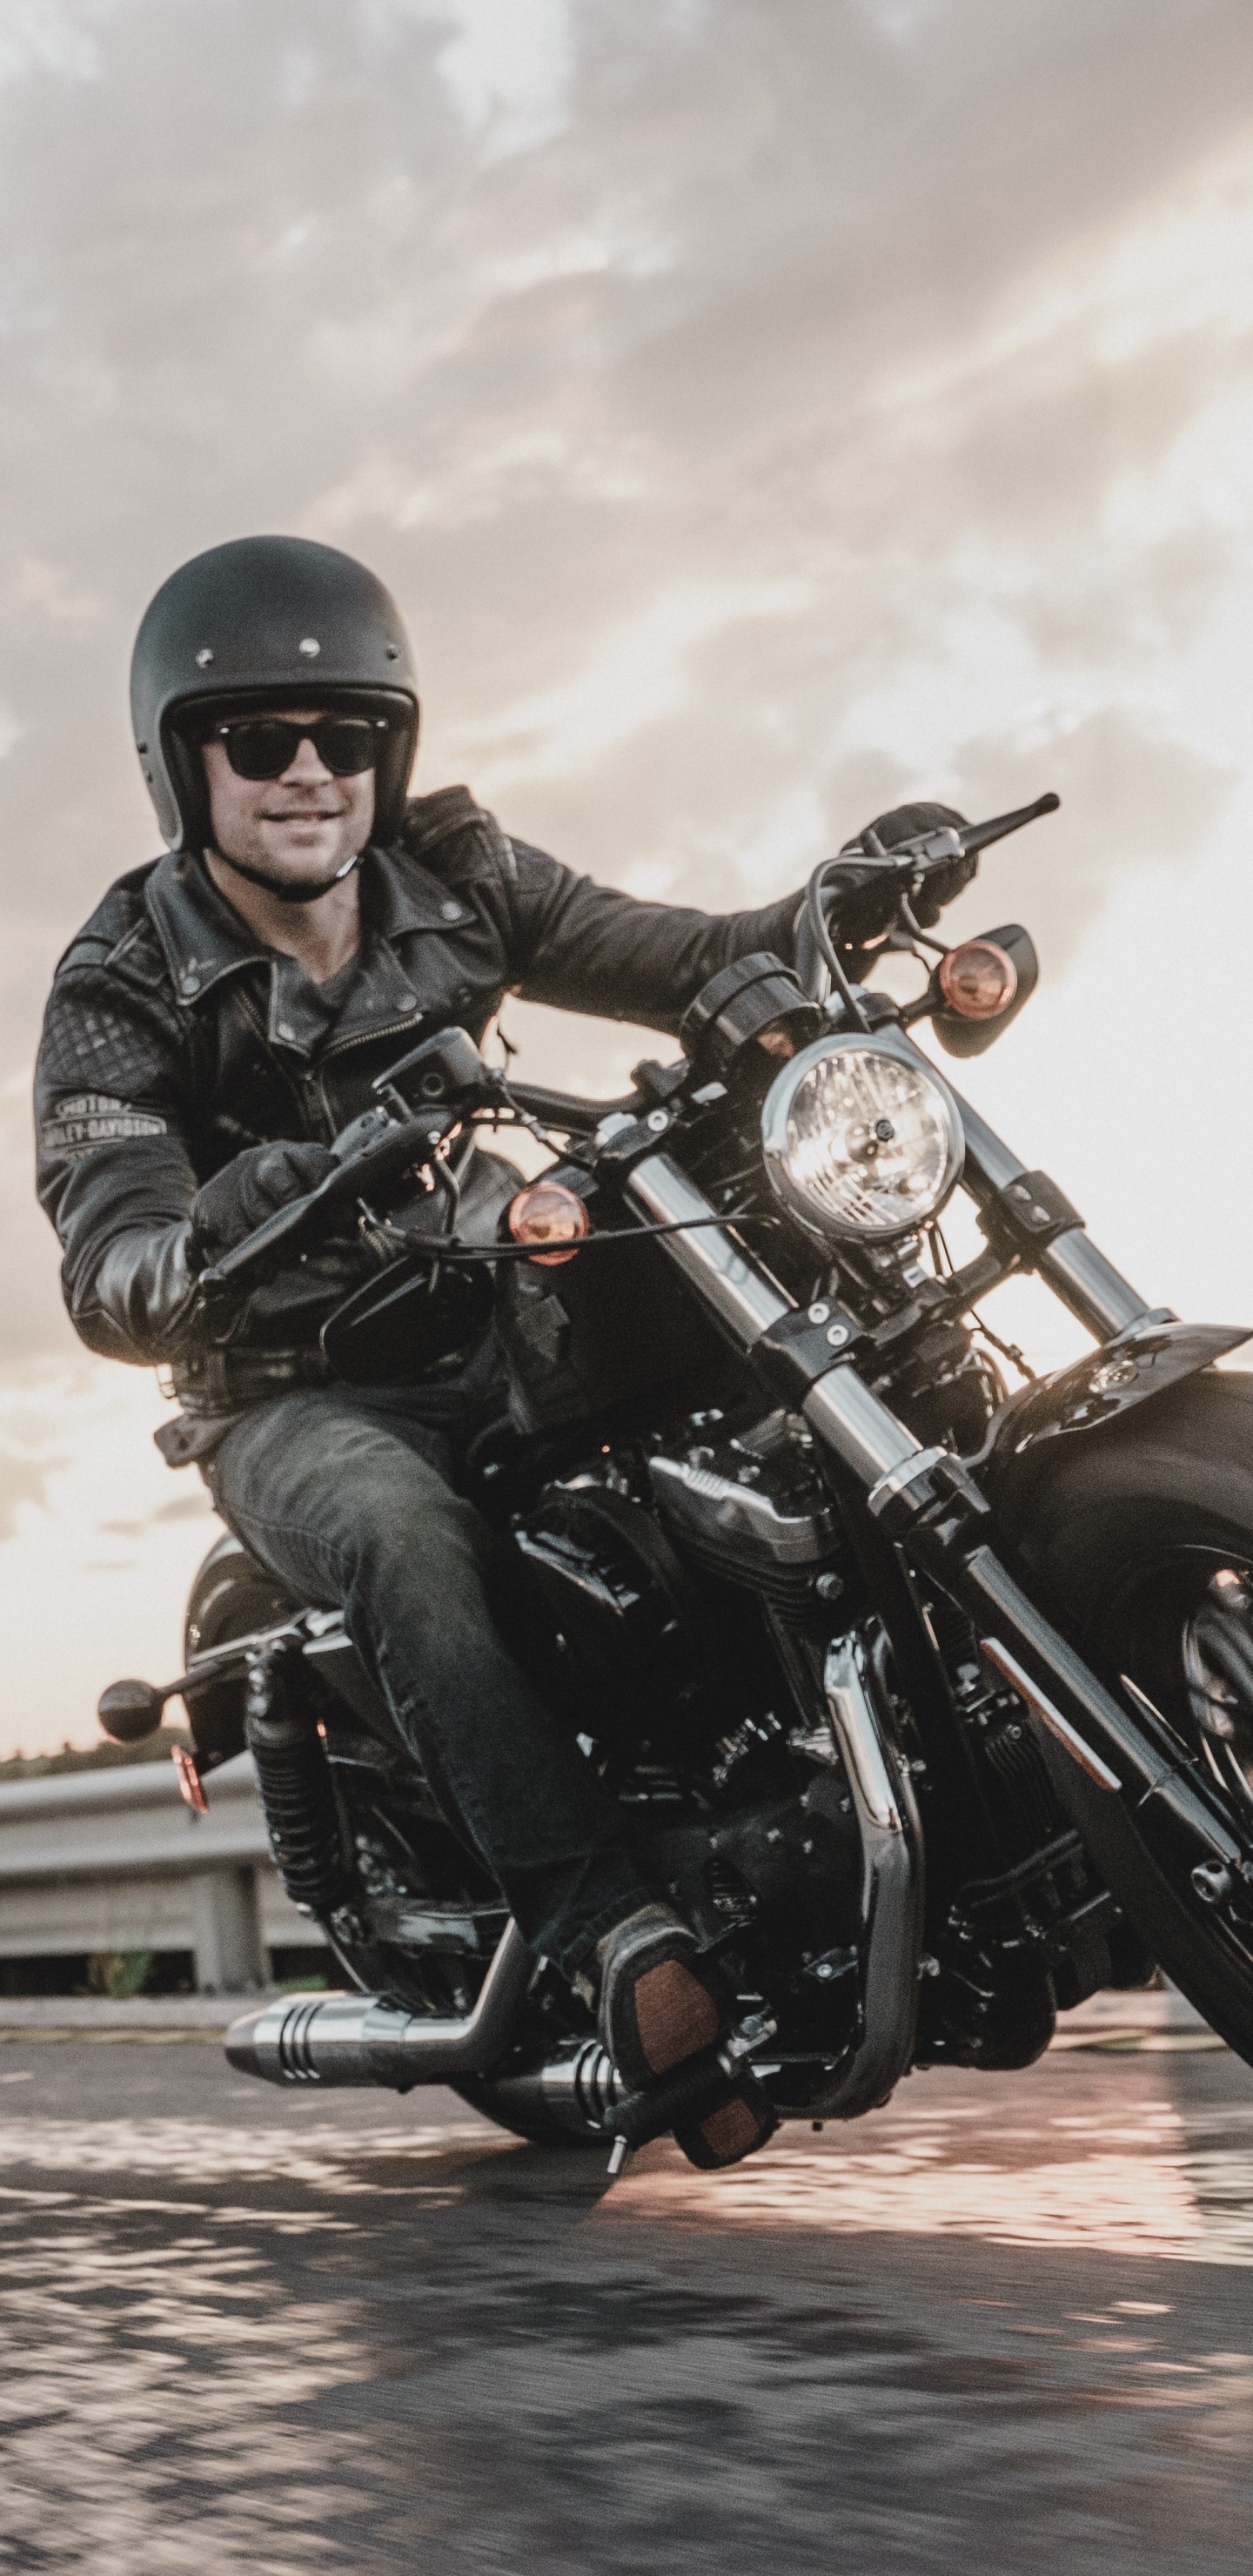 Hombre Con Chaqueta de Cuero Negro Montando Motocicleta. Wallpaper in 1440x2960 Resolution